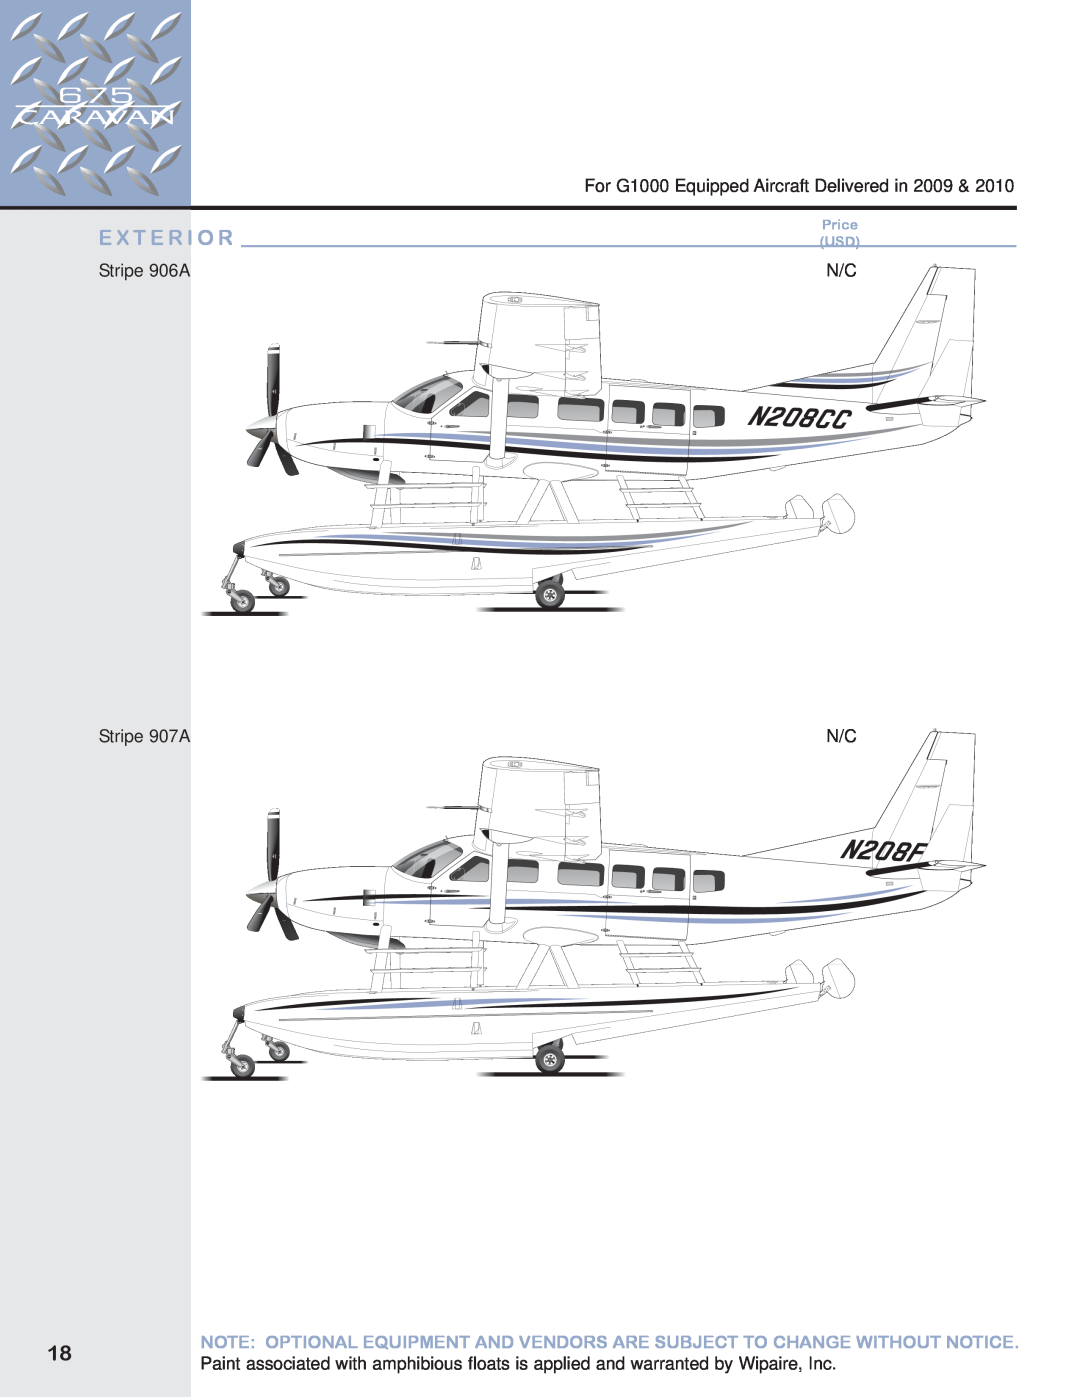 Garmin 675 manual E X T E R I O R, For G1000 Equipped Aircraft Delivered in, Stripe 906A, Stripe 907A, Price USD 